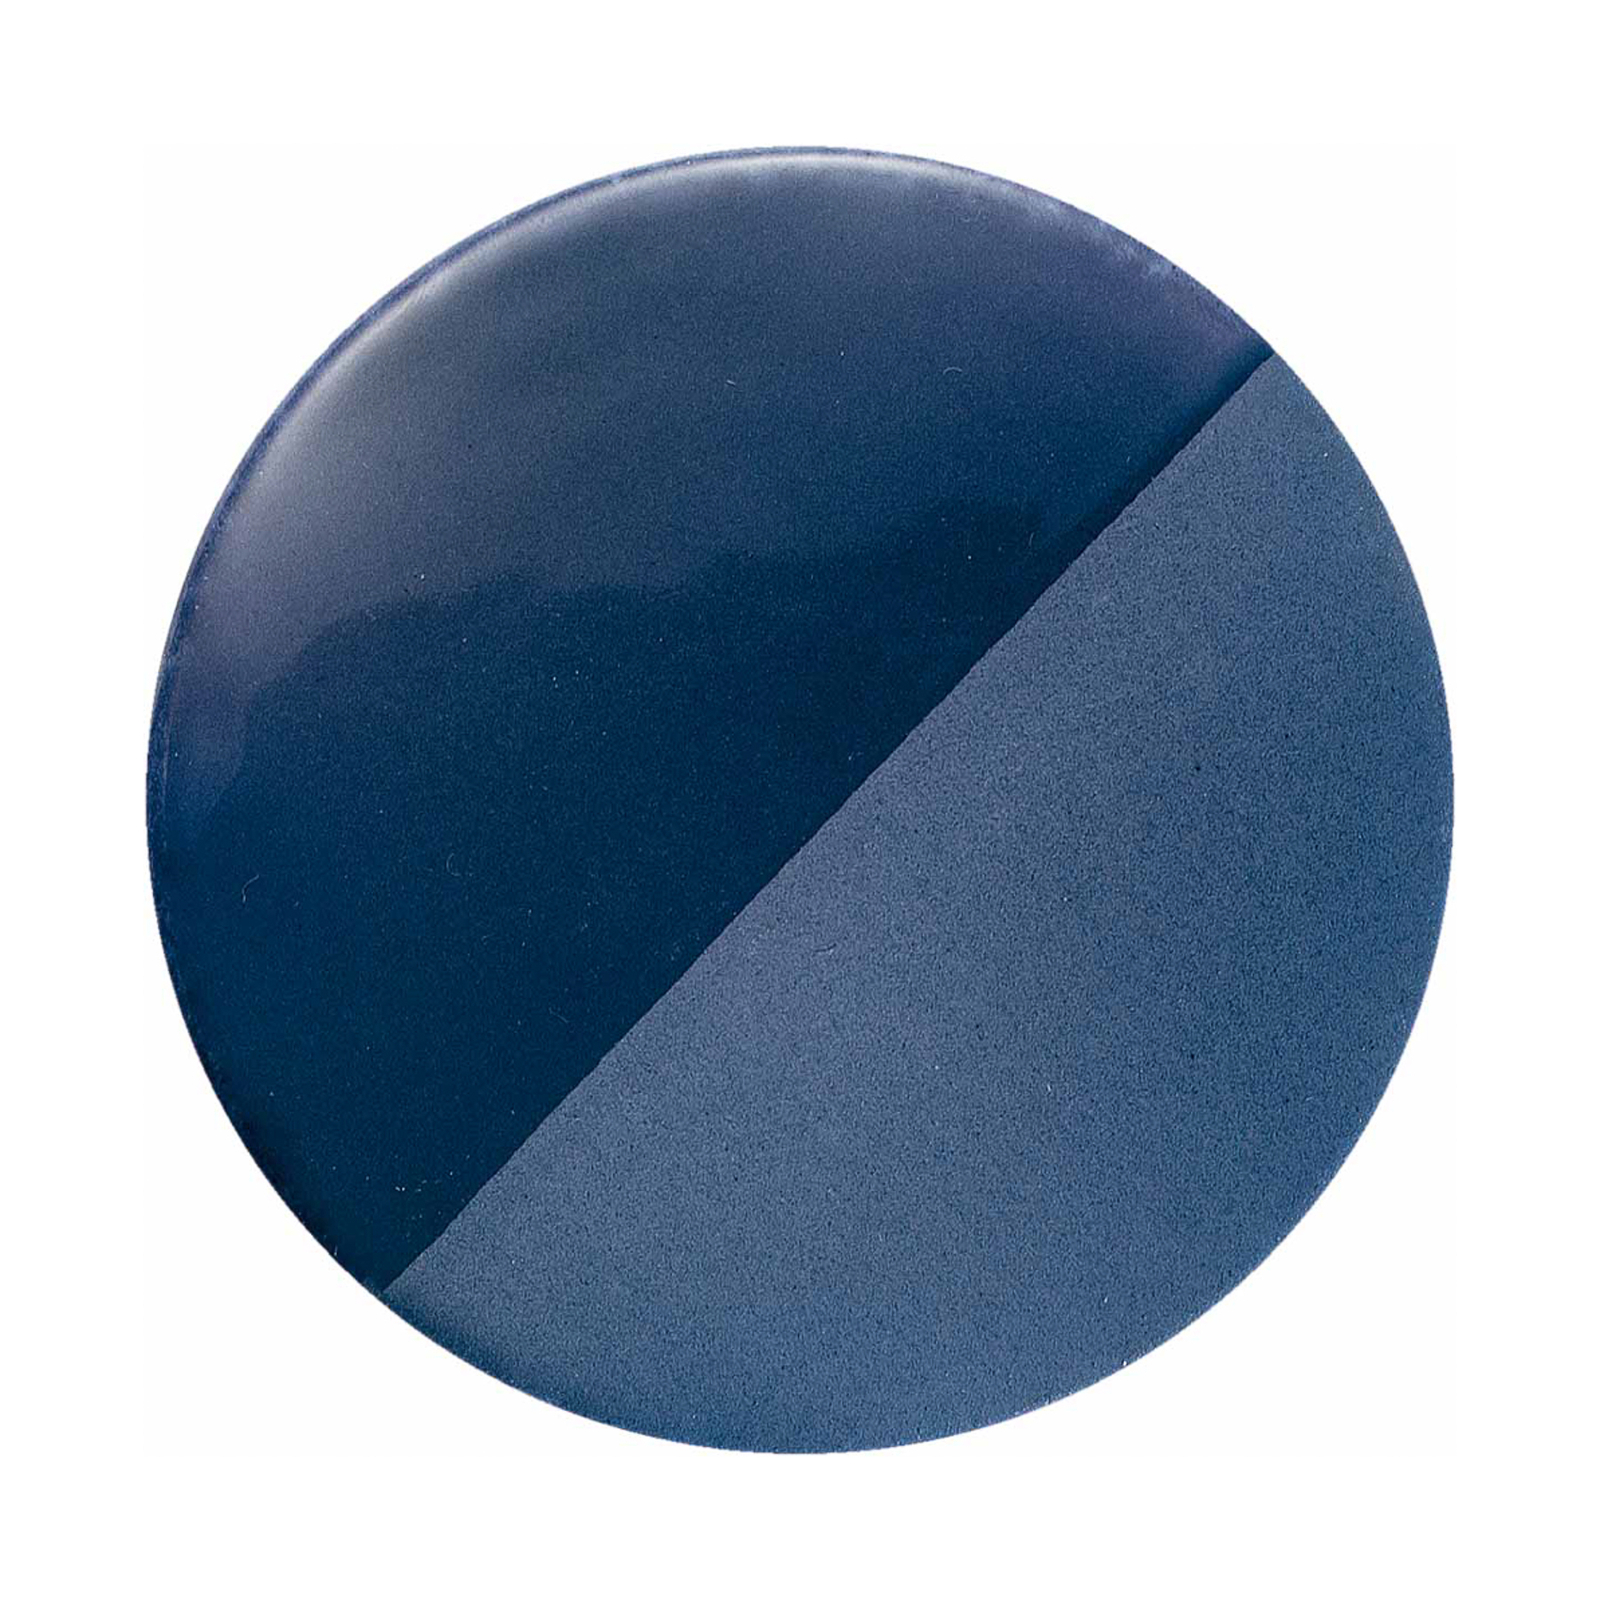 Caxixi függőlámpa kerámiából, kék színben